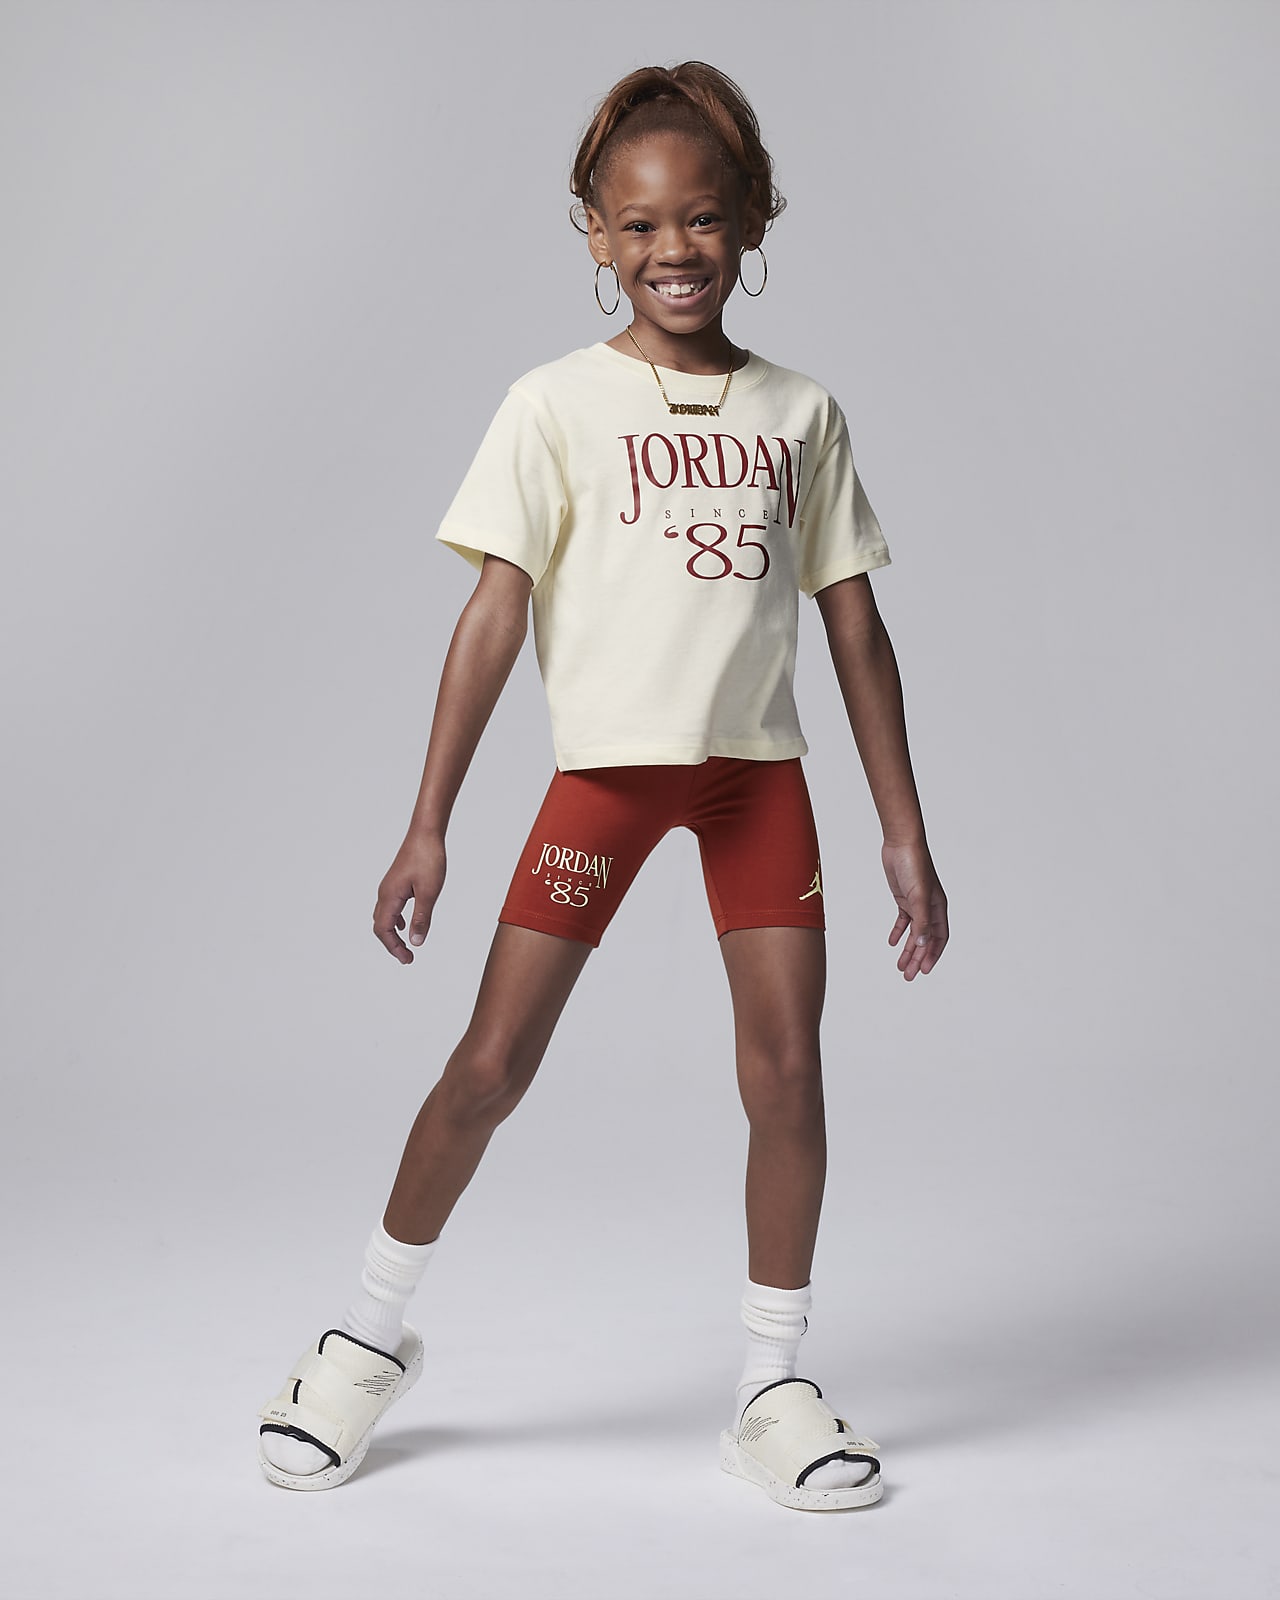 Jordan Brooklyn Mini Me Bike Shorts Set für jüngere Kinder